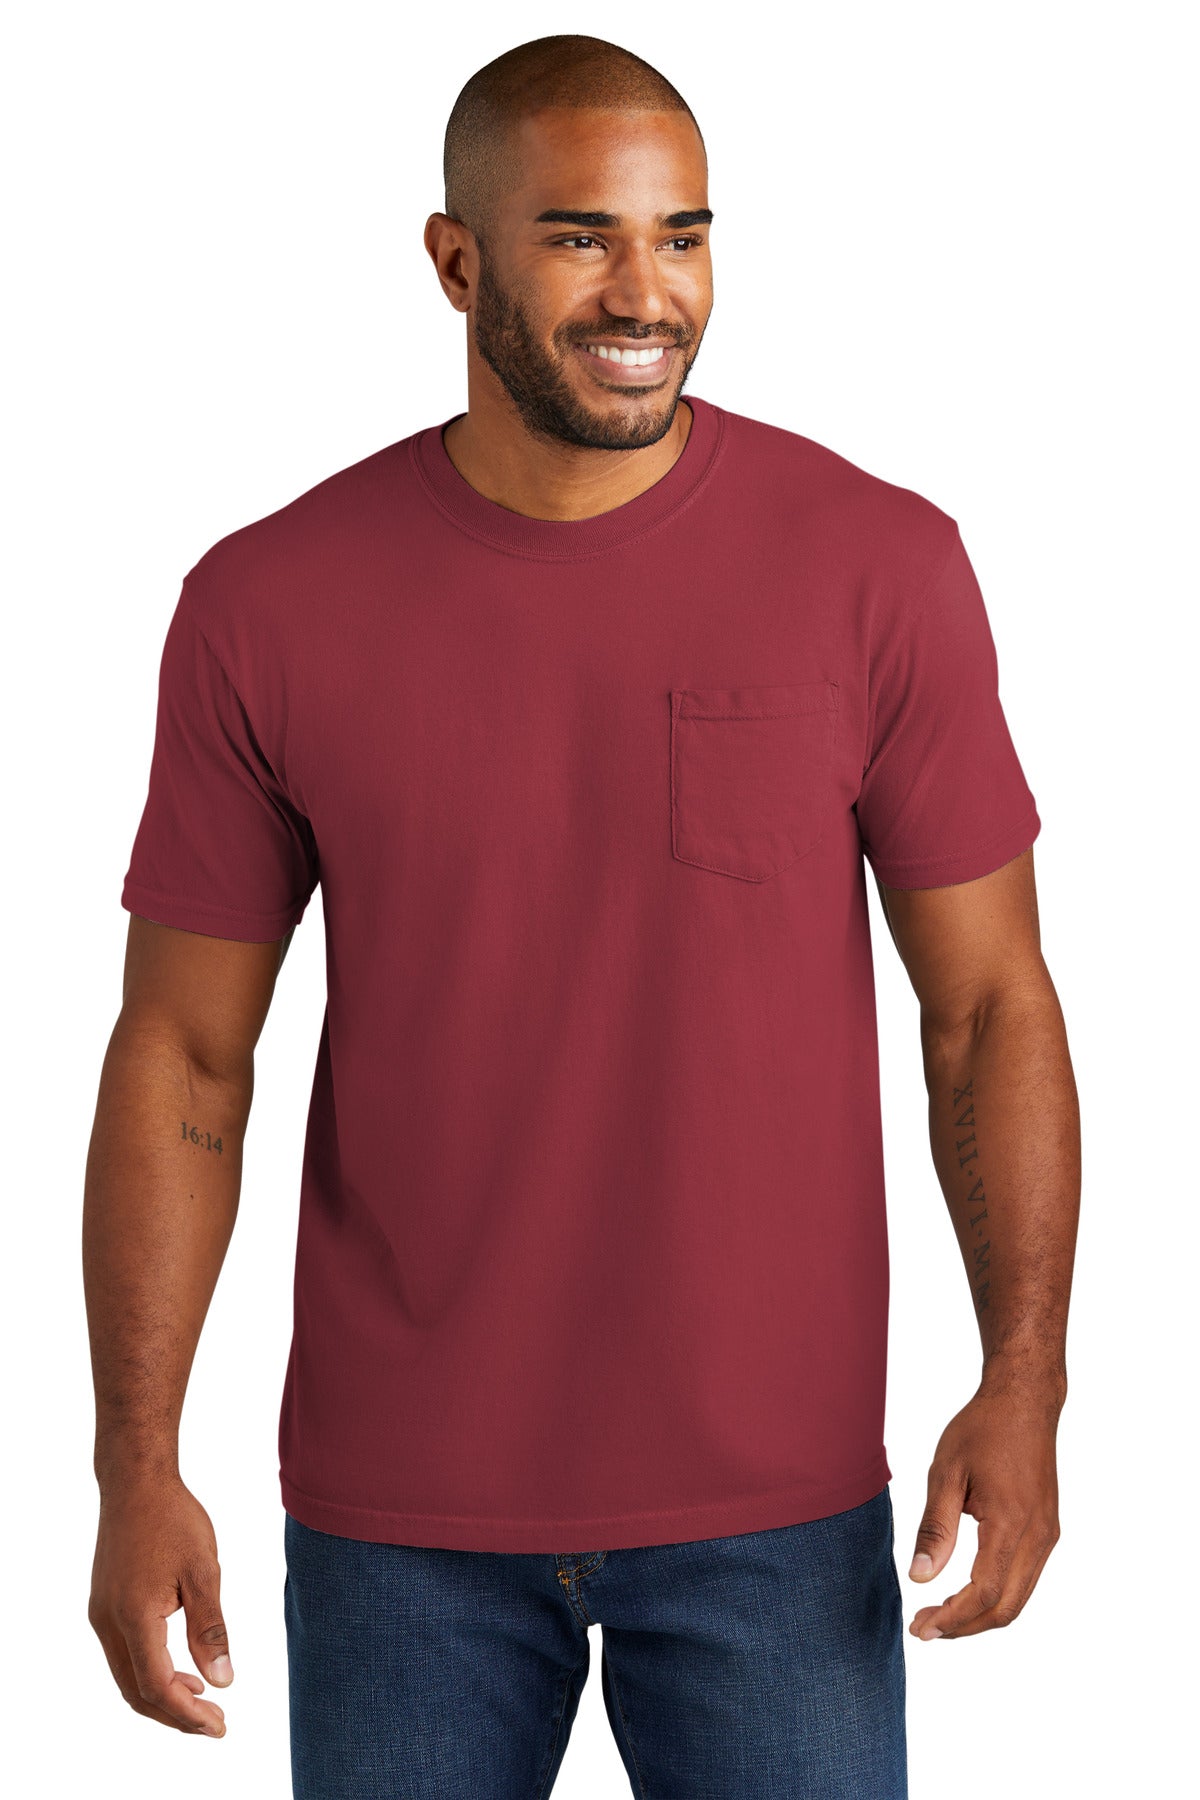 T-Shirts Chili Comfort Colors